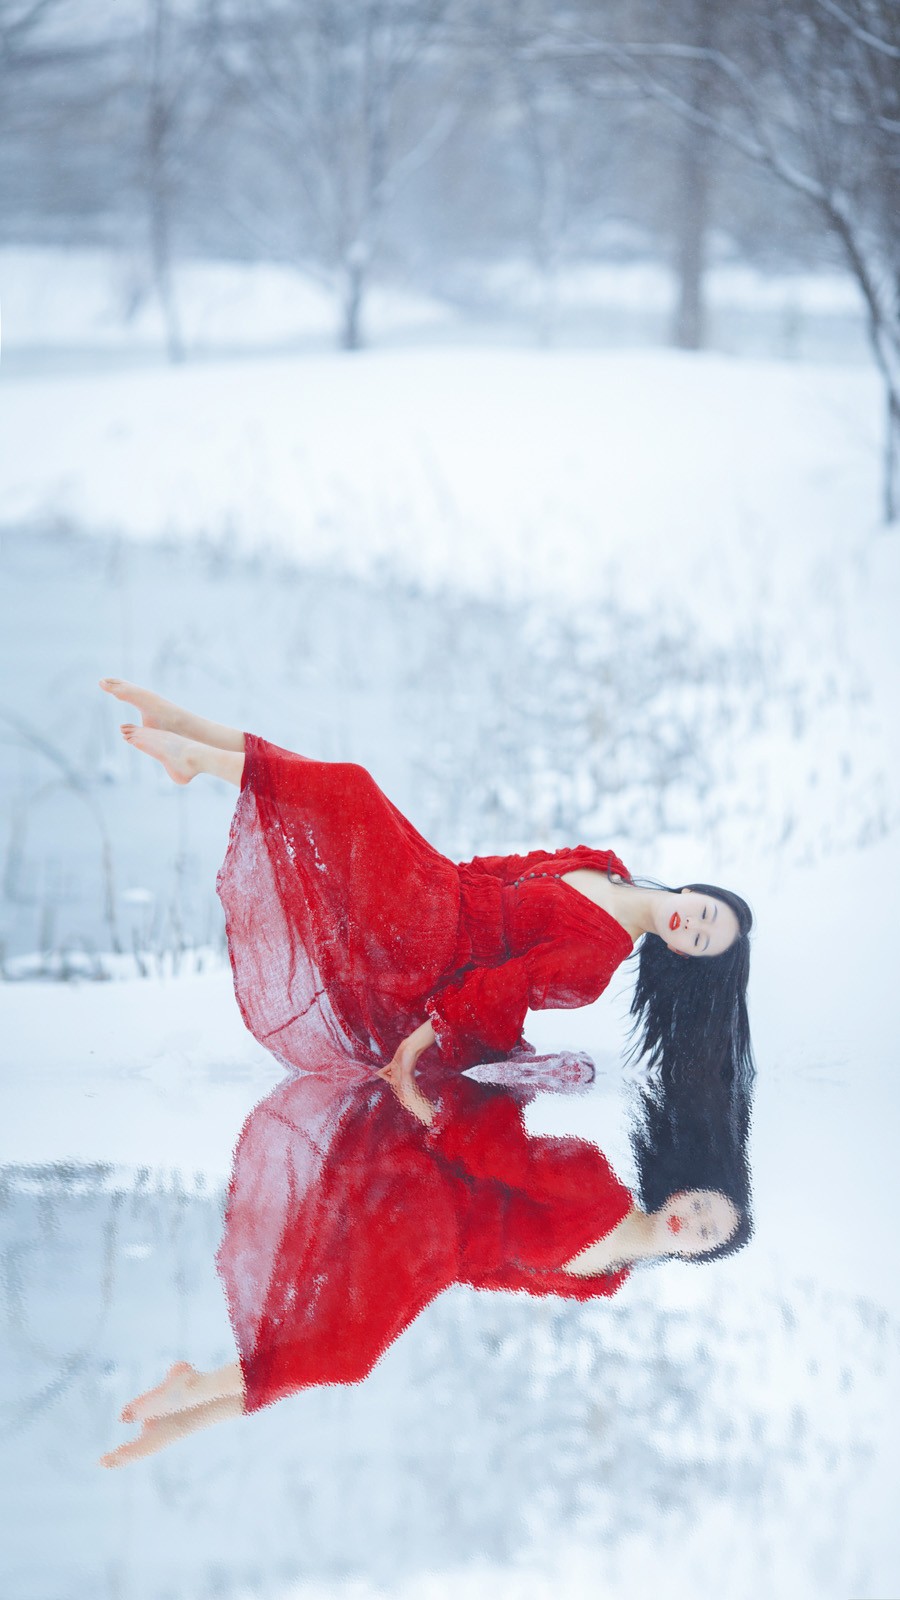 美女露腿赤脚风雪中舞蹈 光看照片就很冷